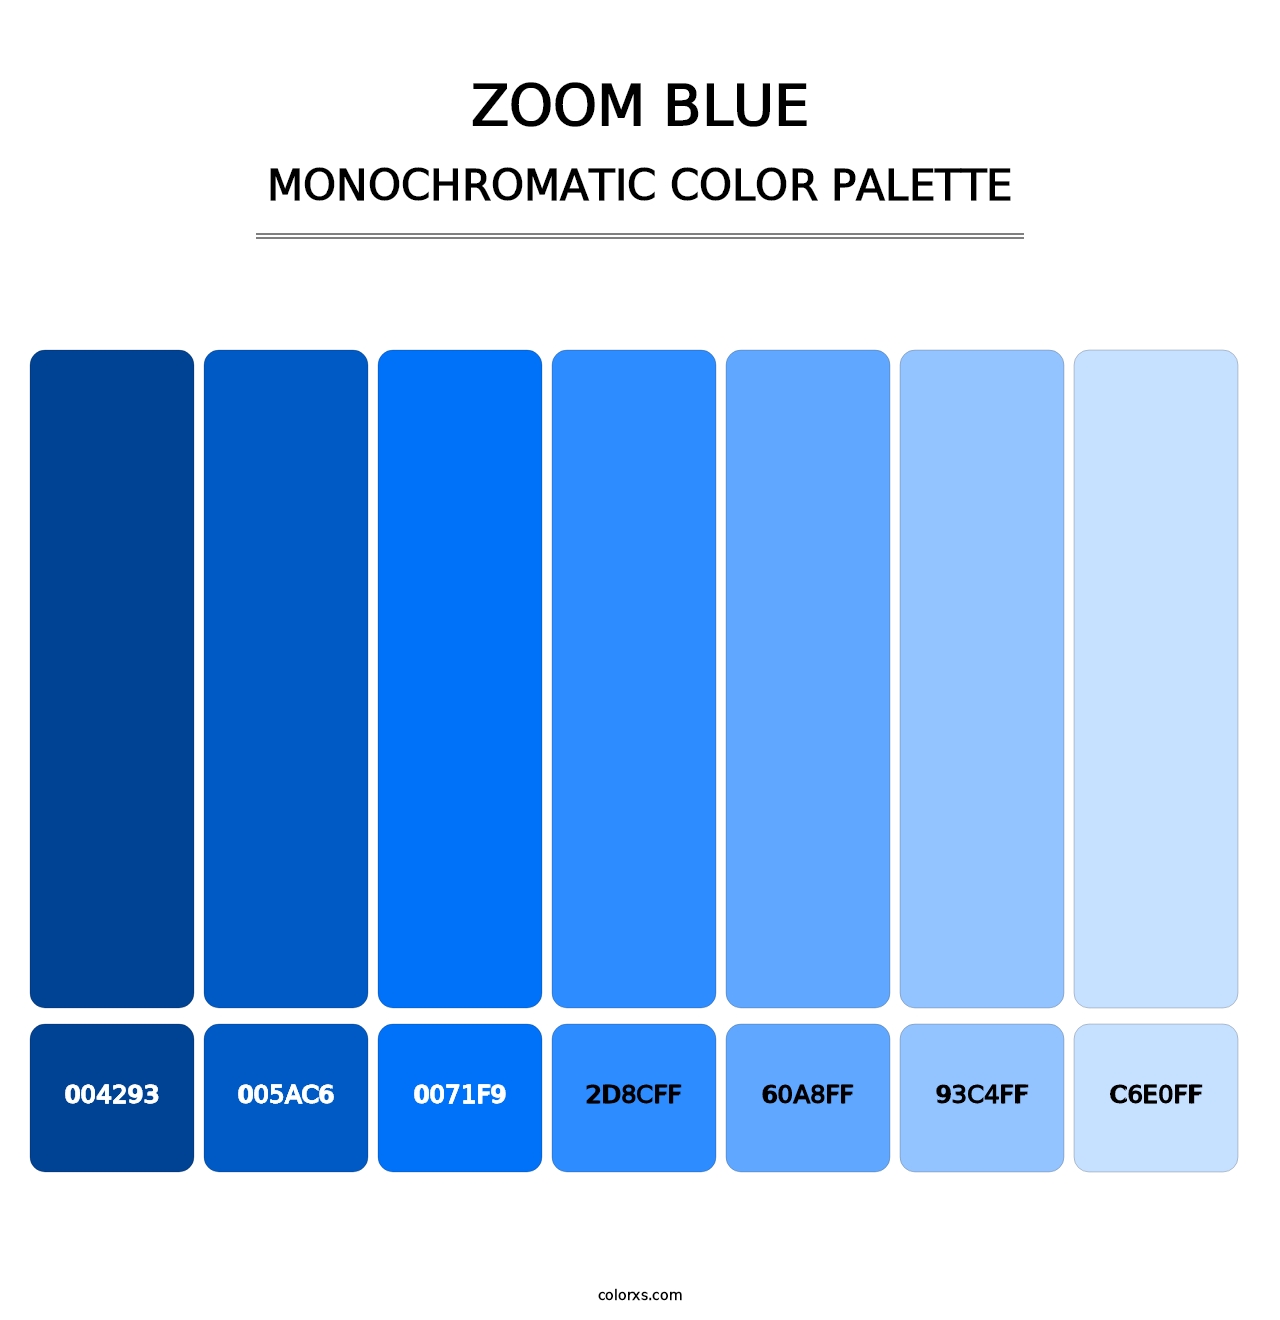 Zoom Blue - Monochromatic Color Palette